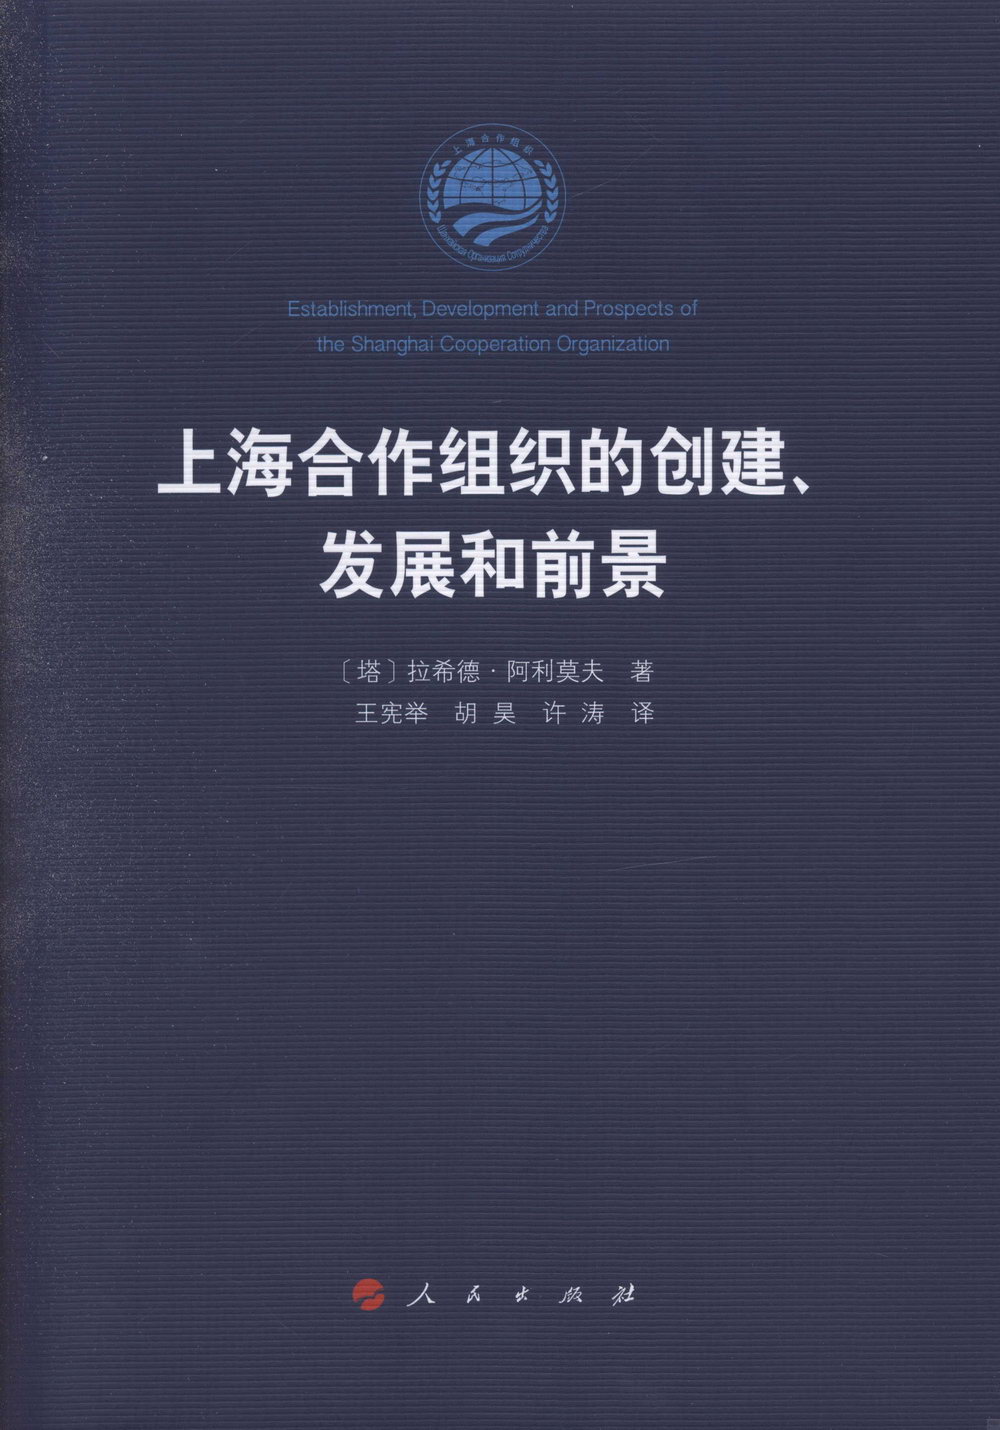 上海合作組織的創建、發展和前景